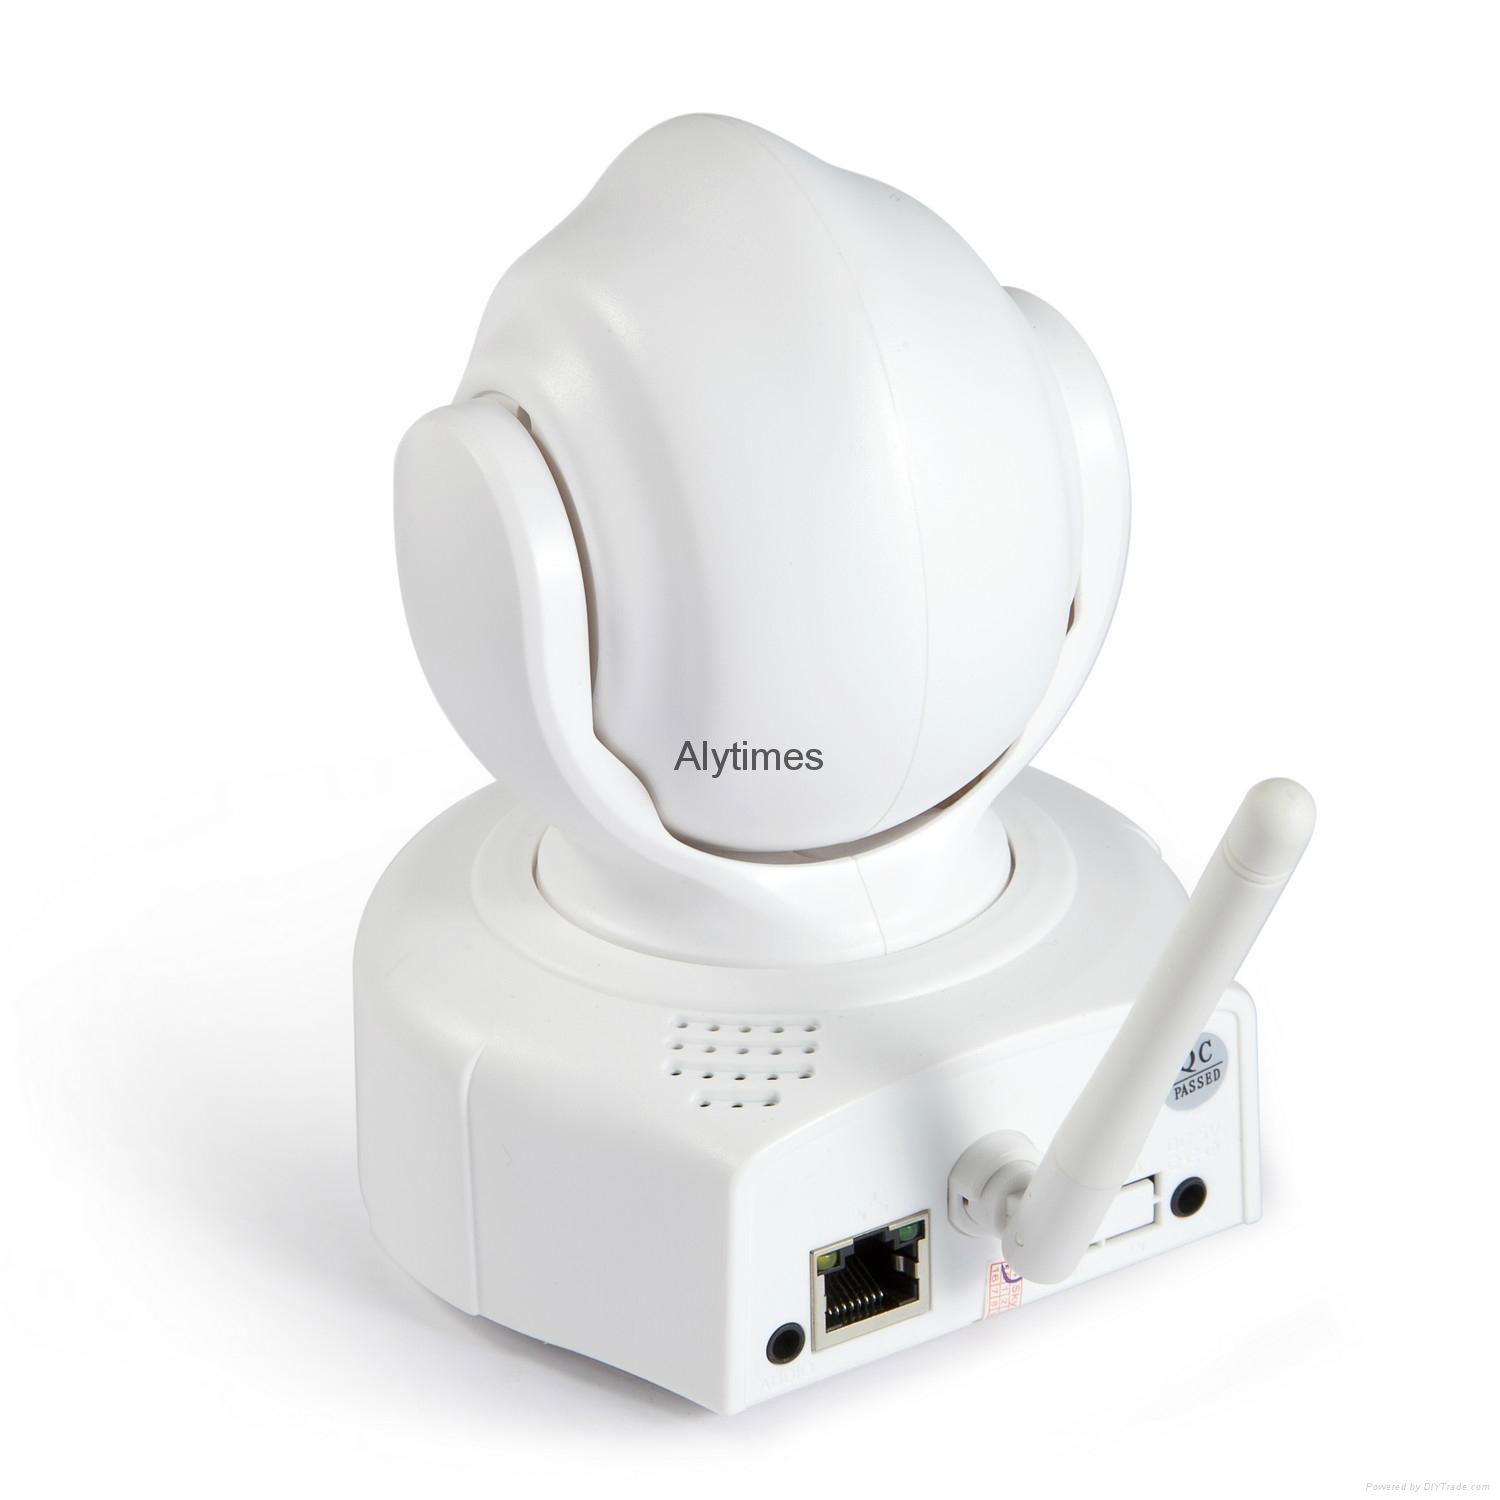 Alytimes Aly008 HD indoor 2-way audio video surveillance ip network camera 720p  3